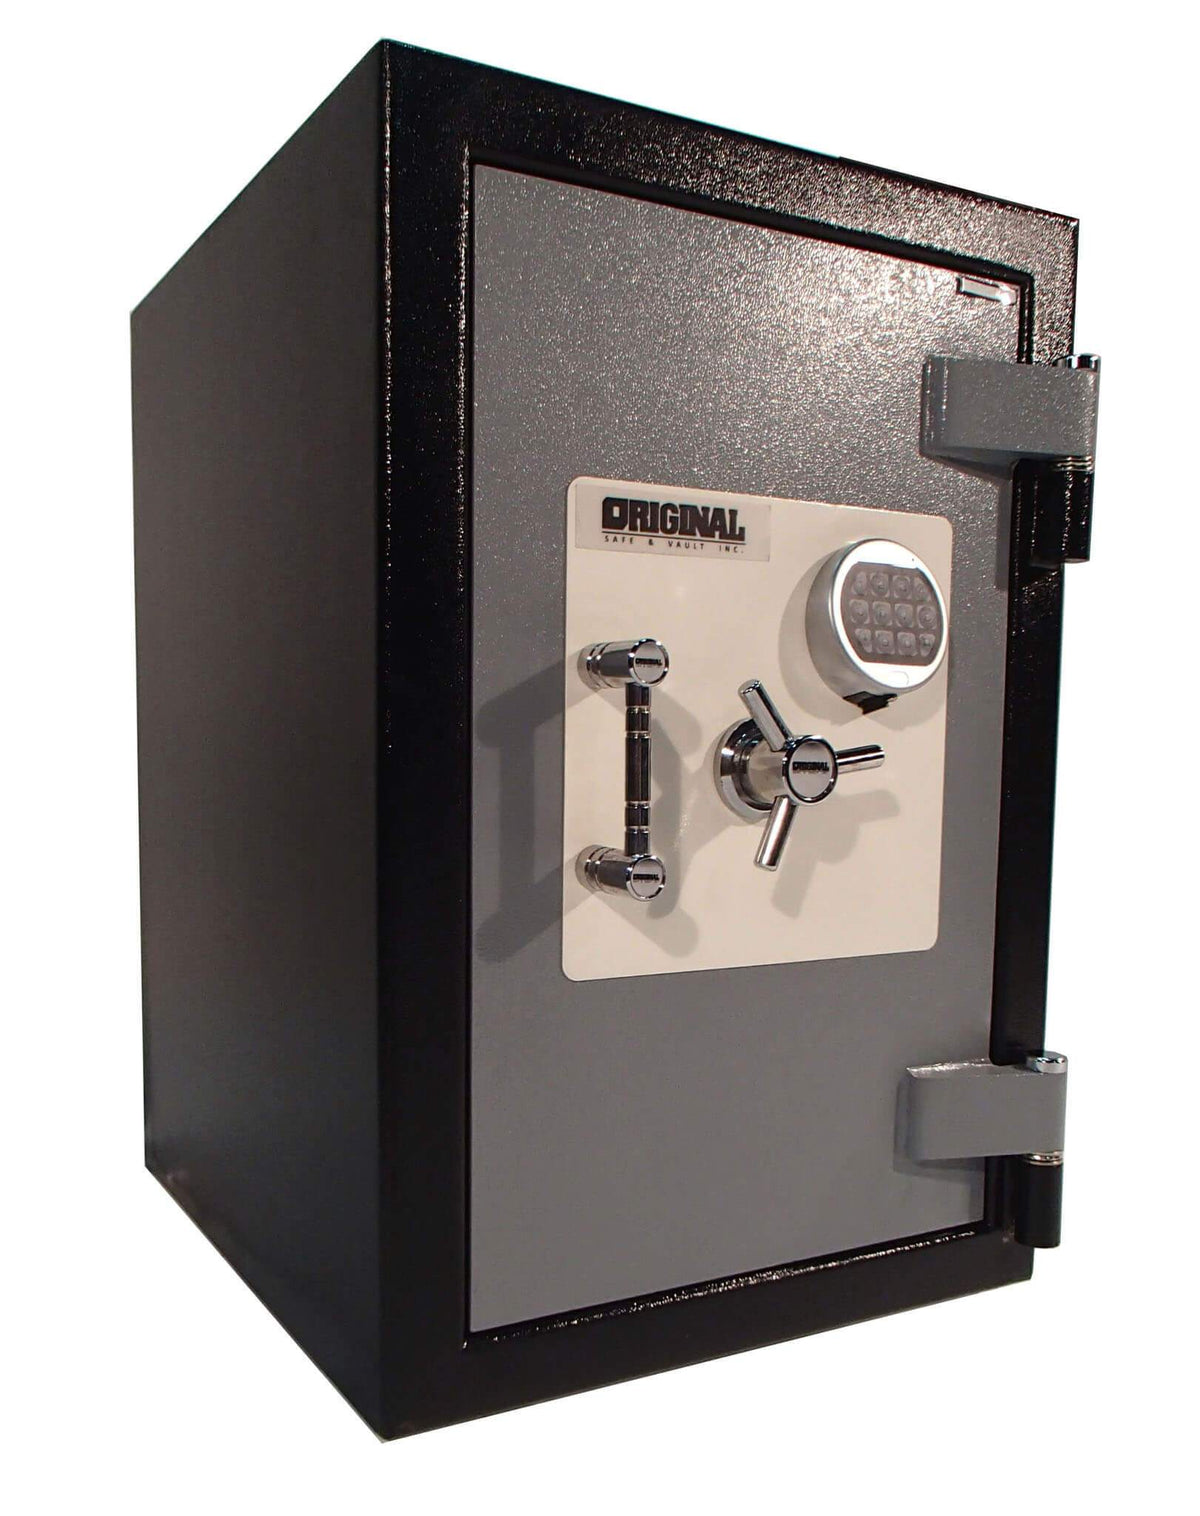 Burglar Fire Safe Products - Original Enforcer 3616 C-Rated Burglar &amp; Fire Safe